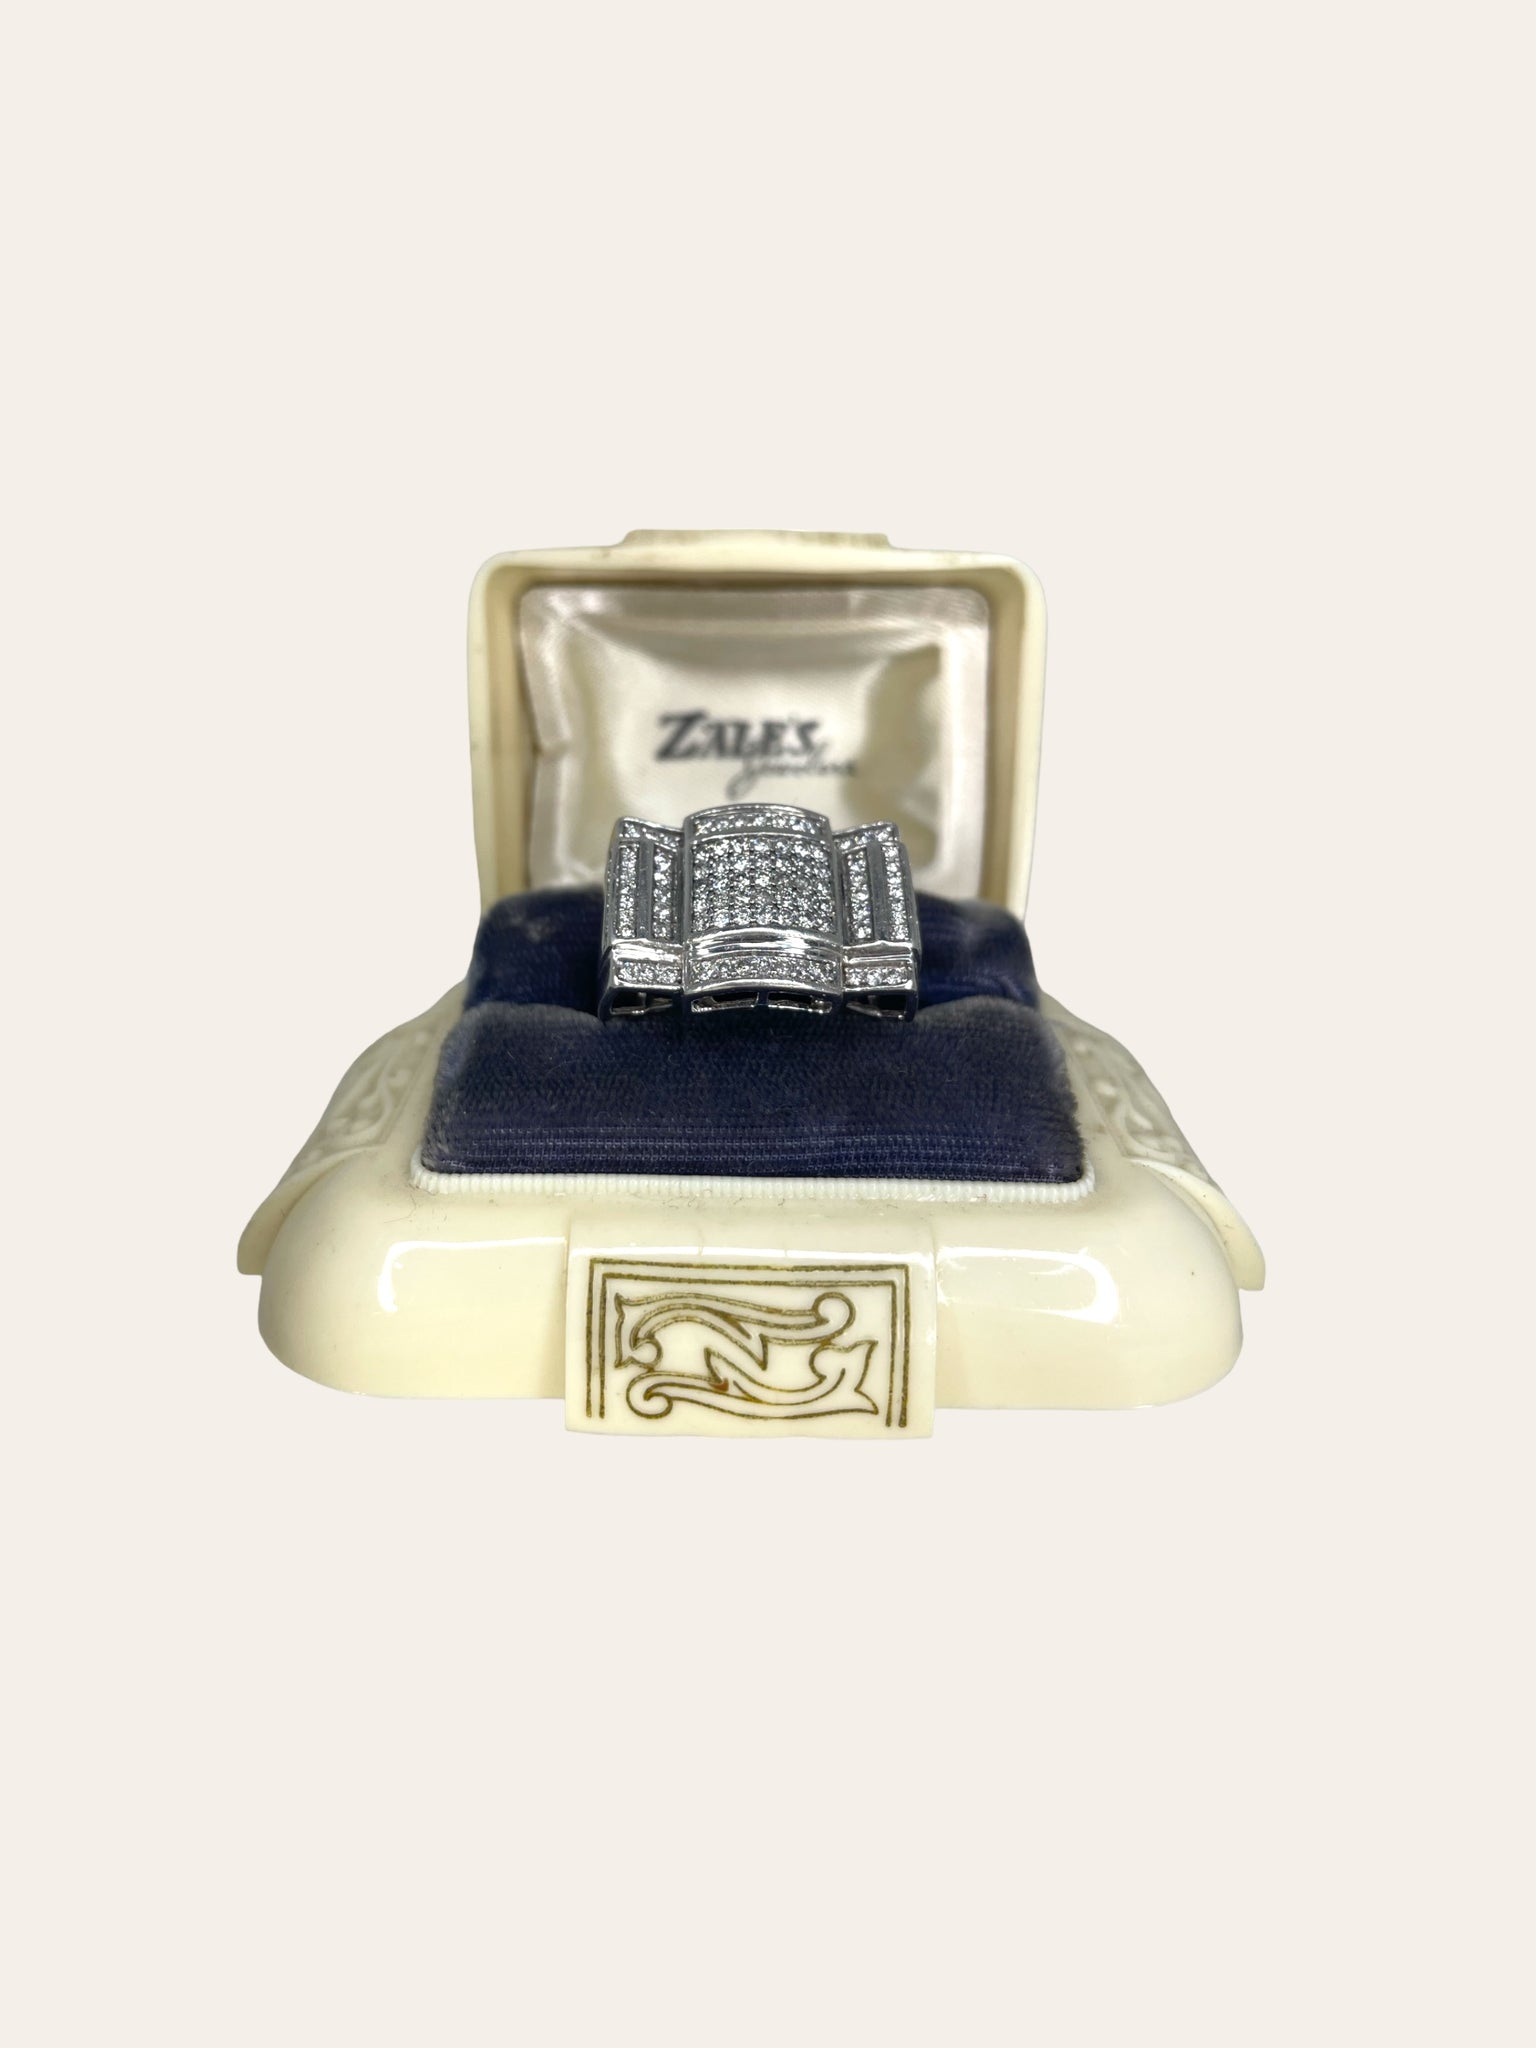 White gold Art Deco ring